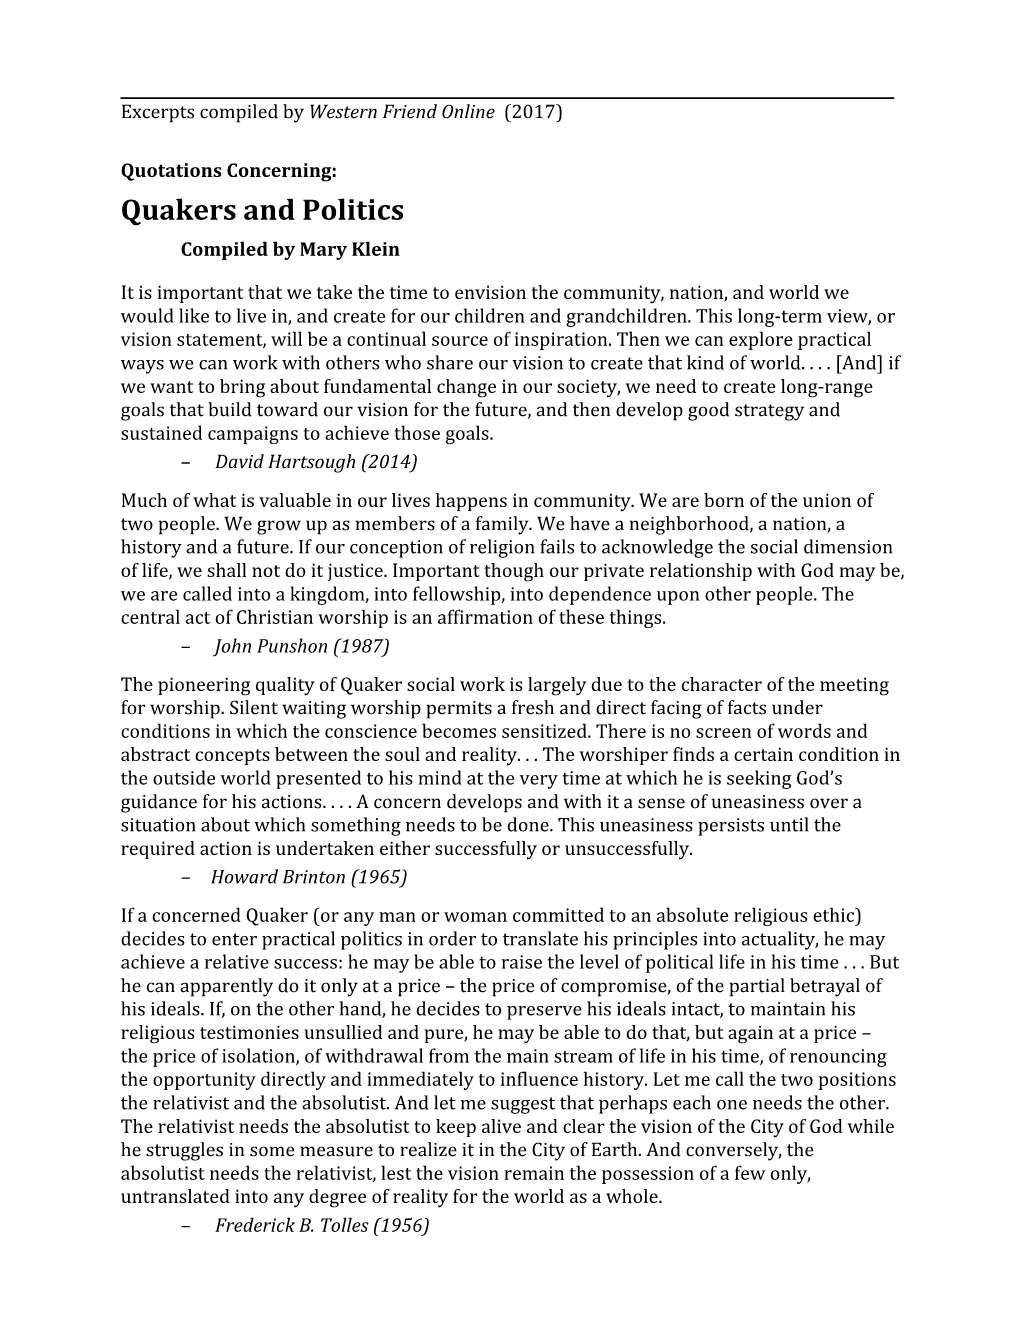 Quakers & Politics